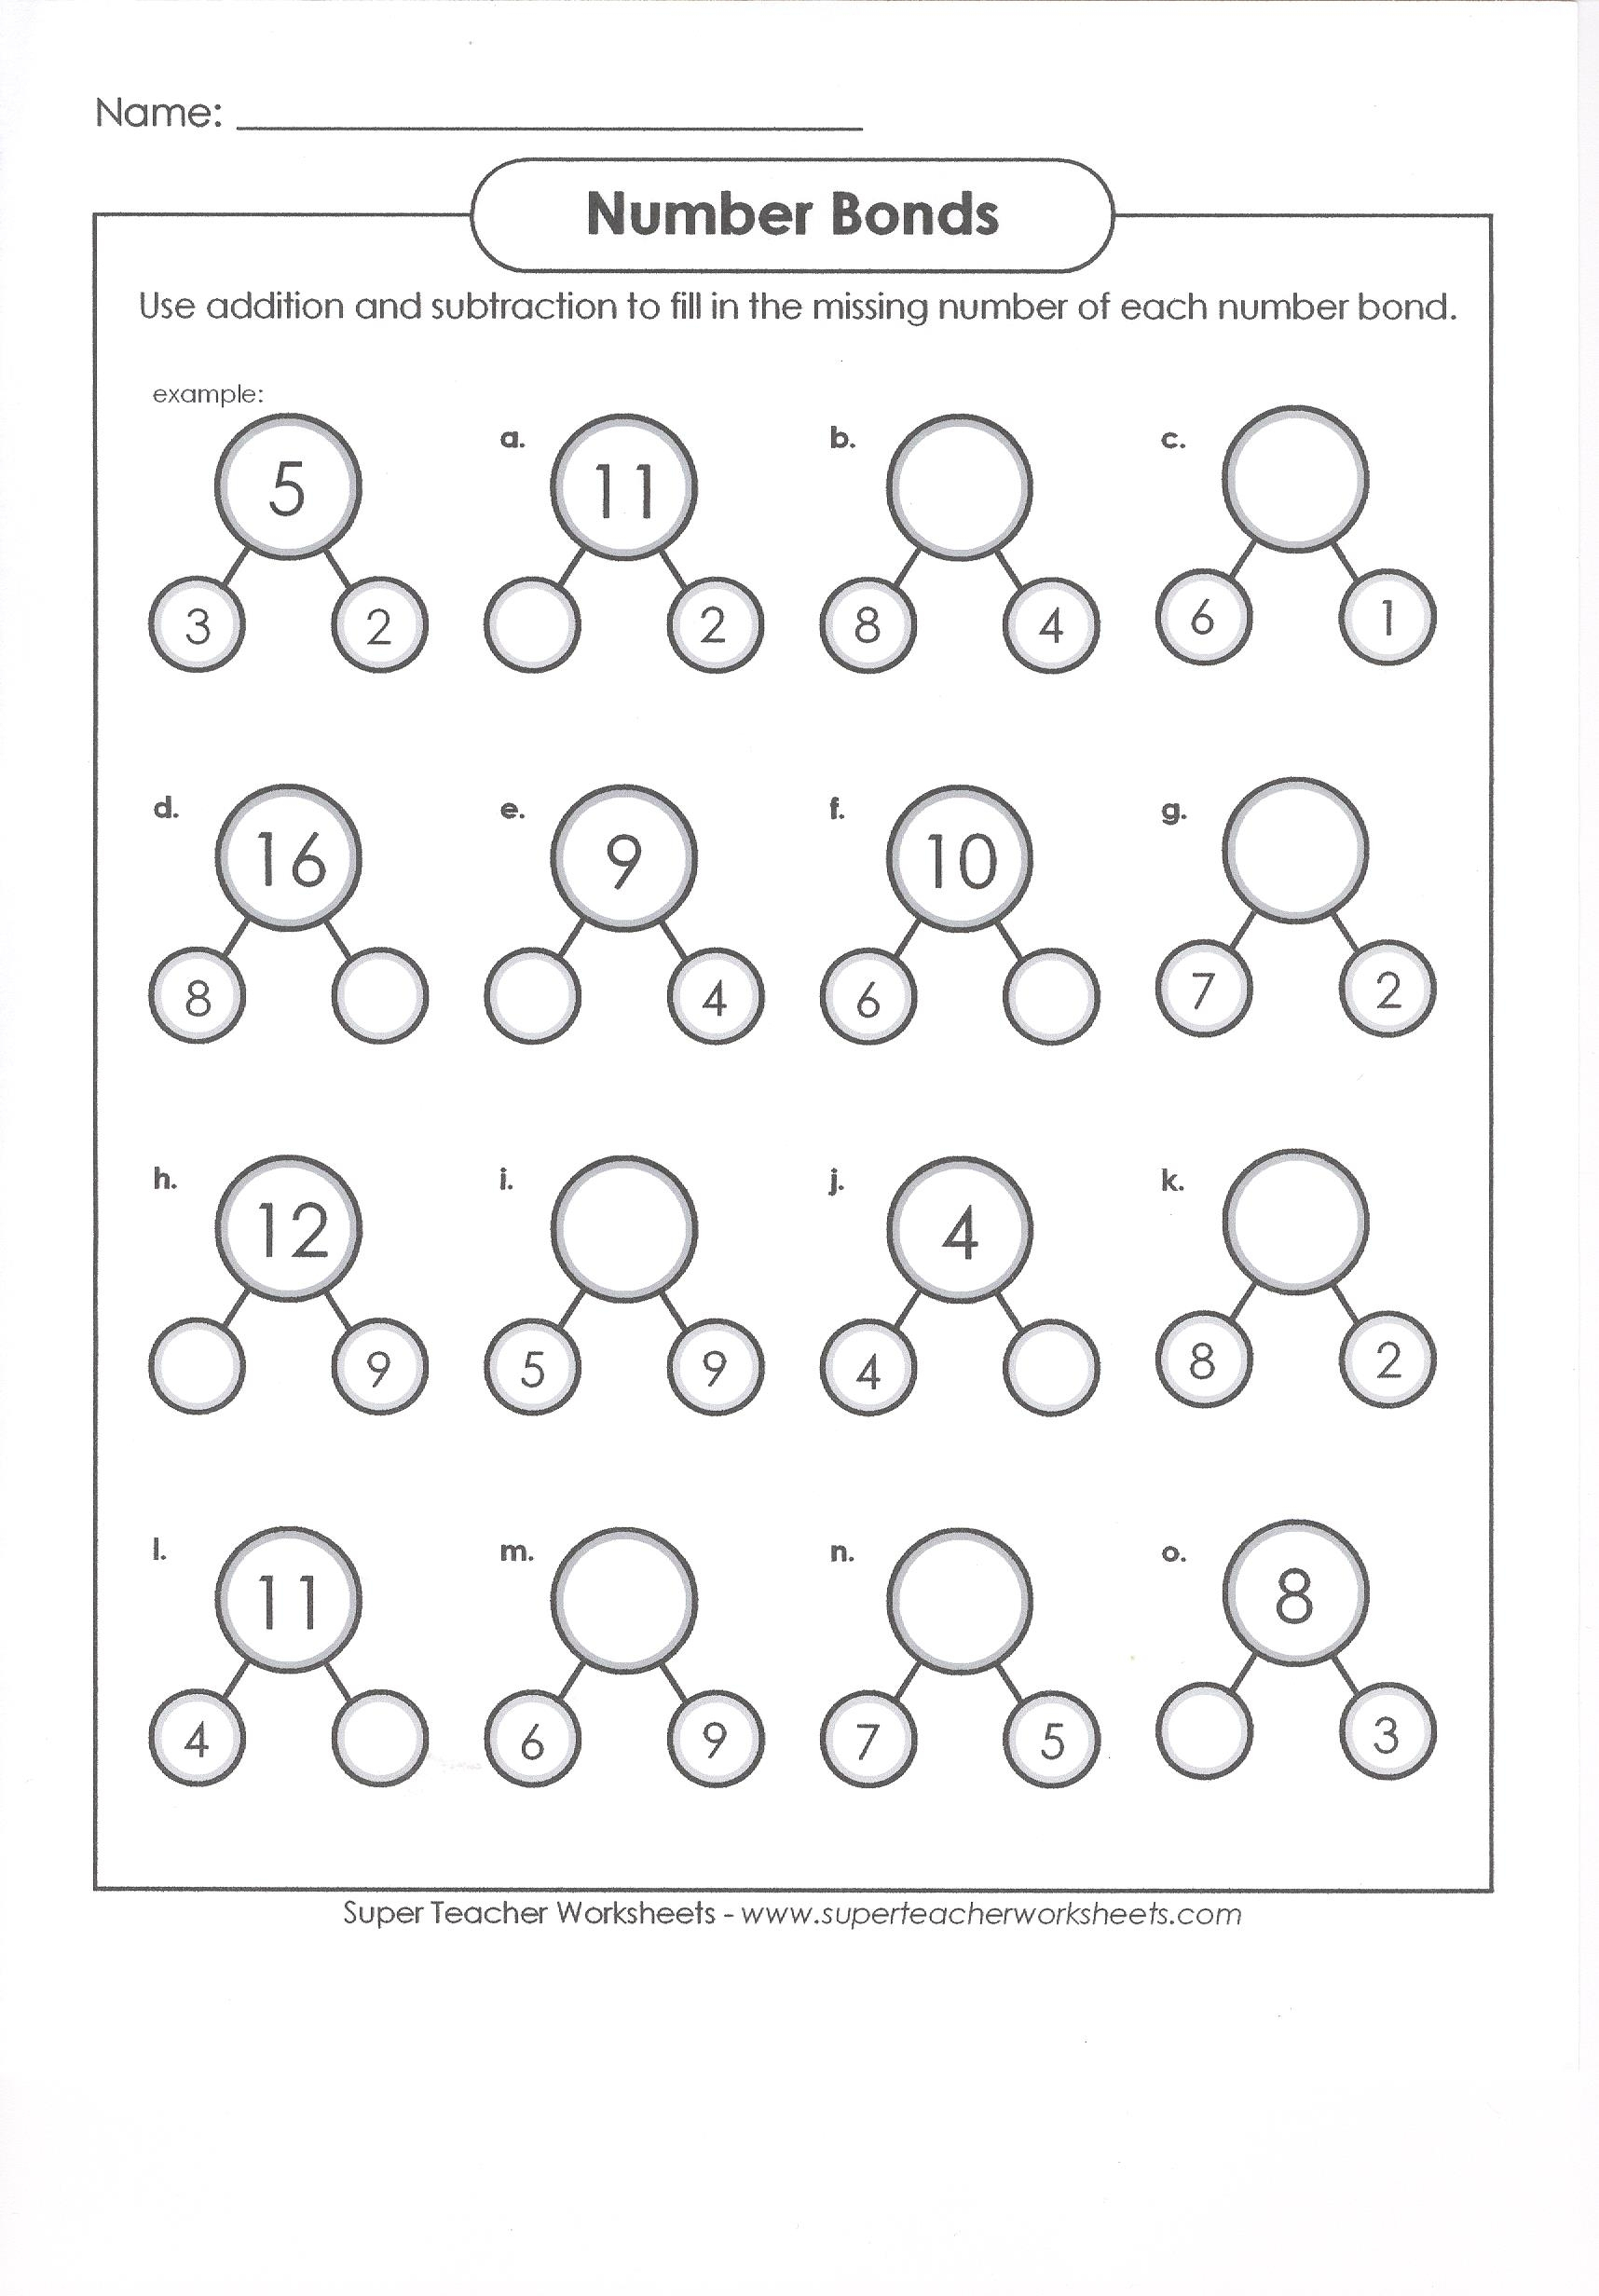 Awesome Decomposing Numbers Worksheet For Kindergarten | Fun Worksheet - Free Printable Number Bonds Worksheets For Kindergarten